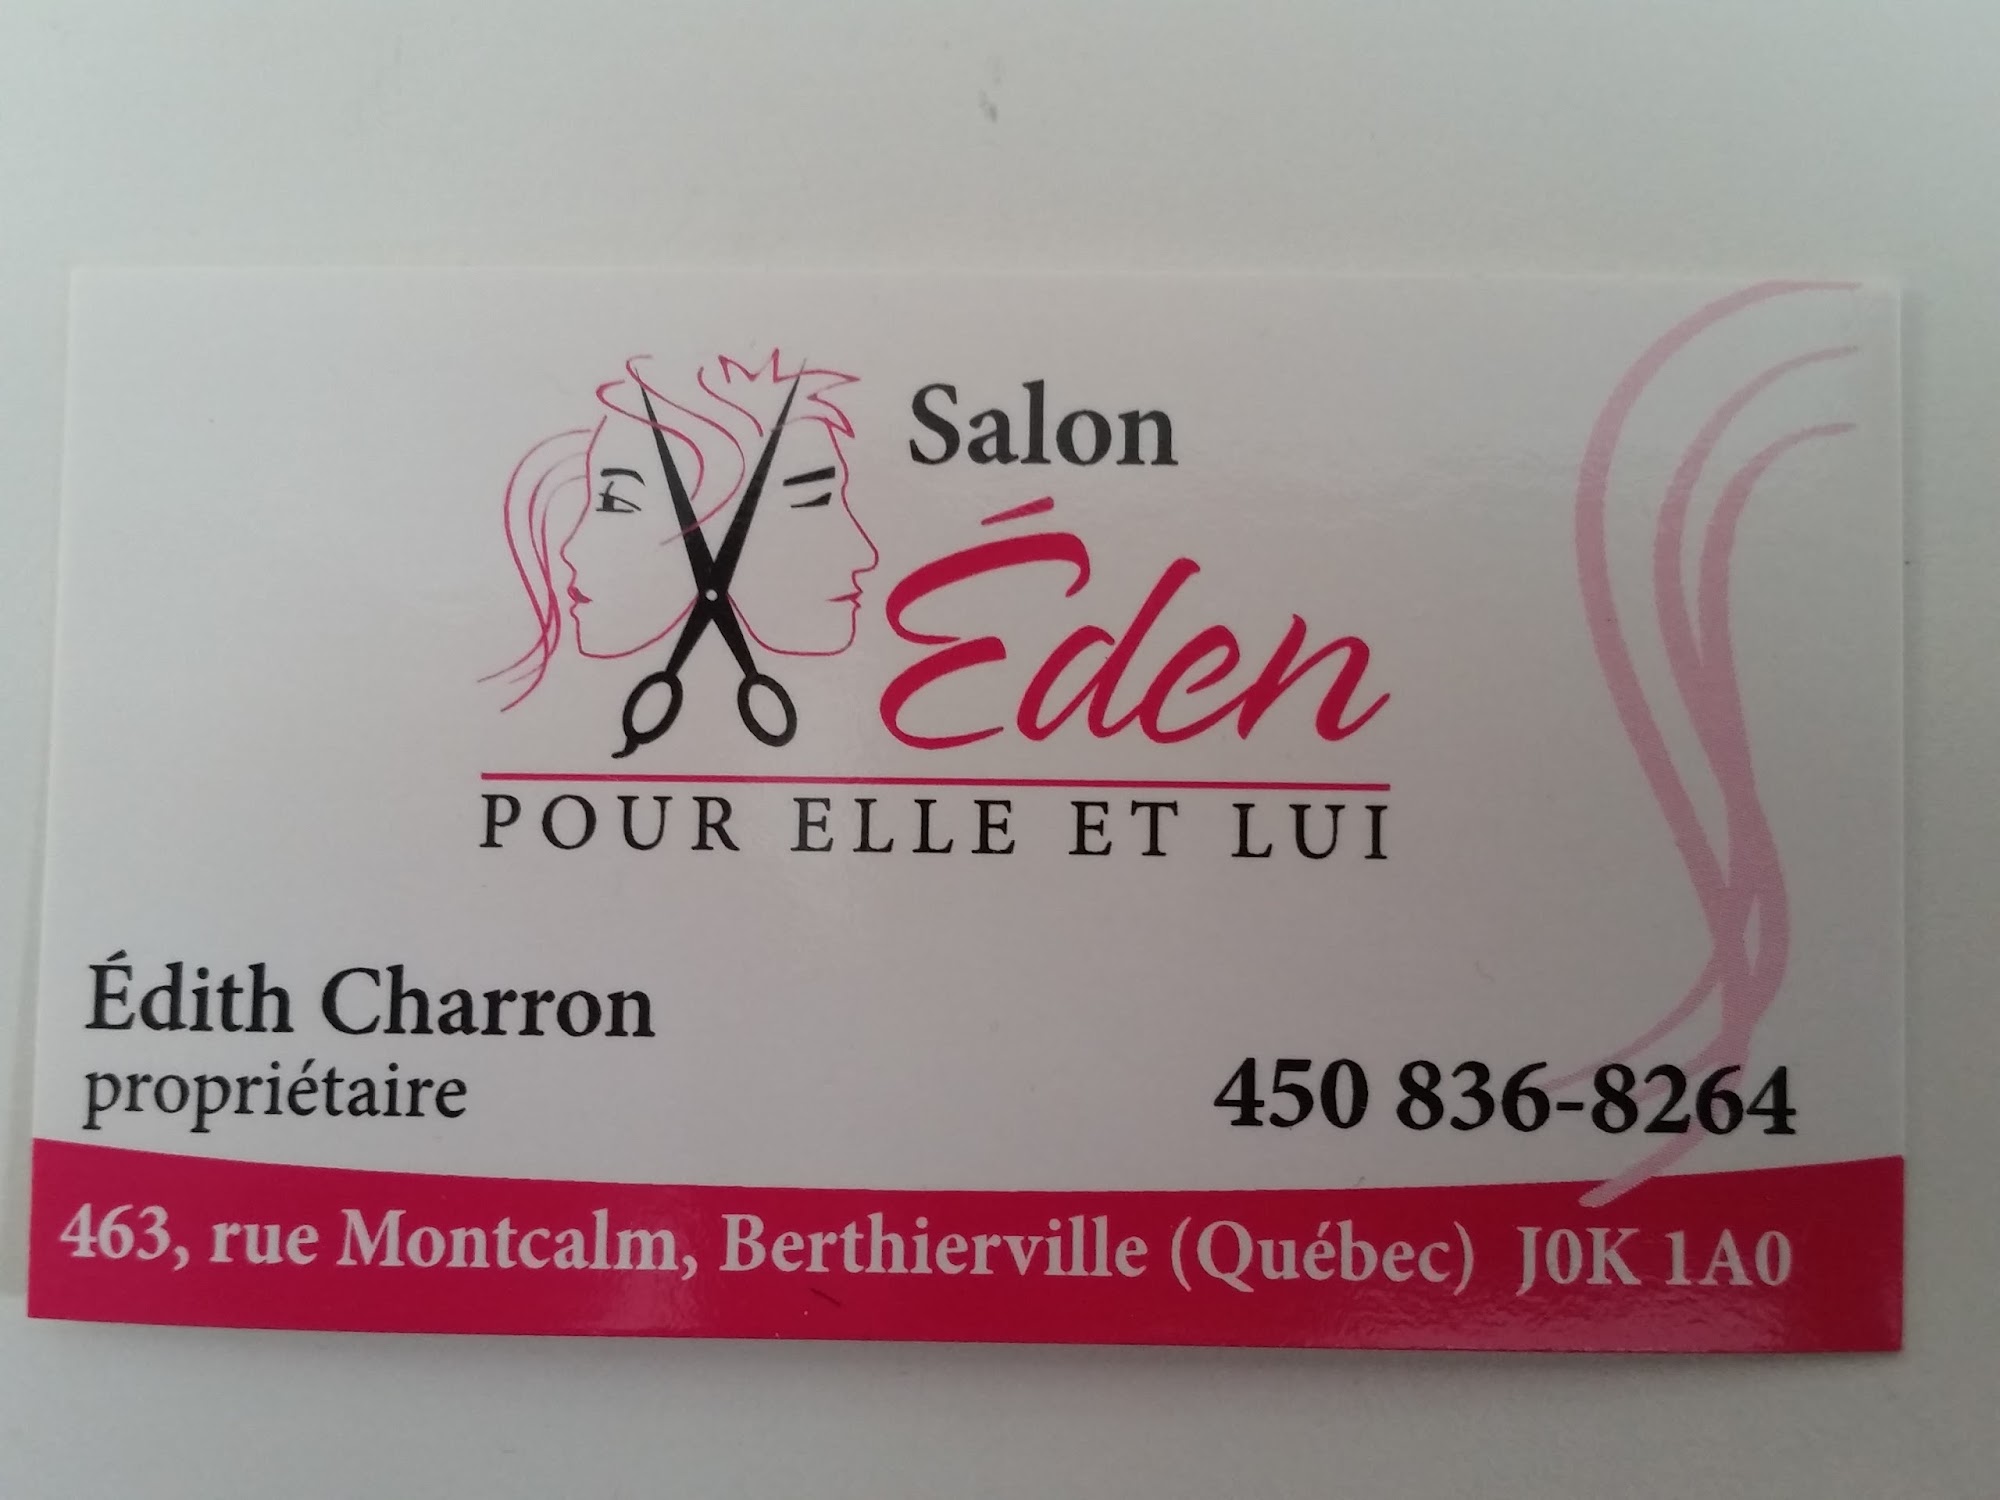 Salon Eden 463 Rue de Montcalm, Berthierville Quebec J0K 1A0